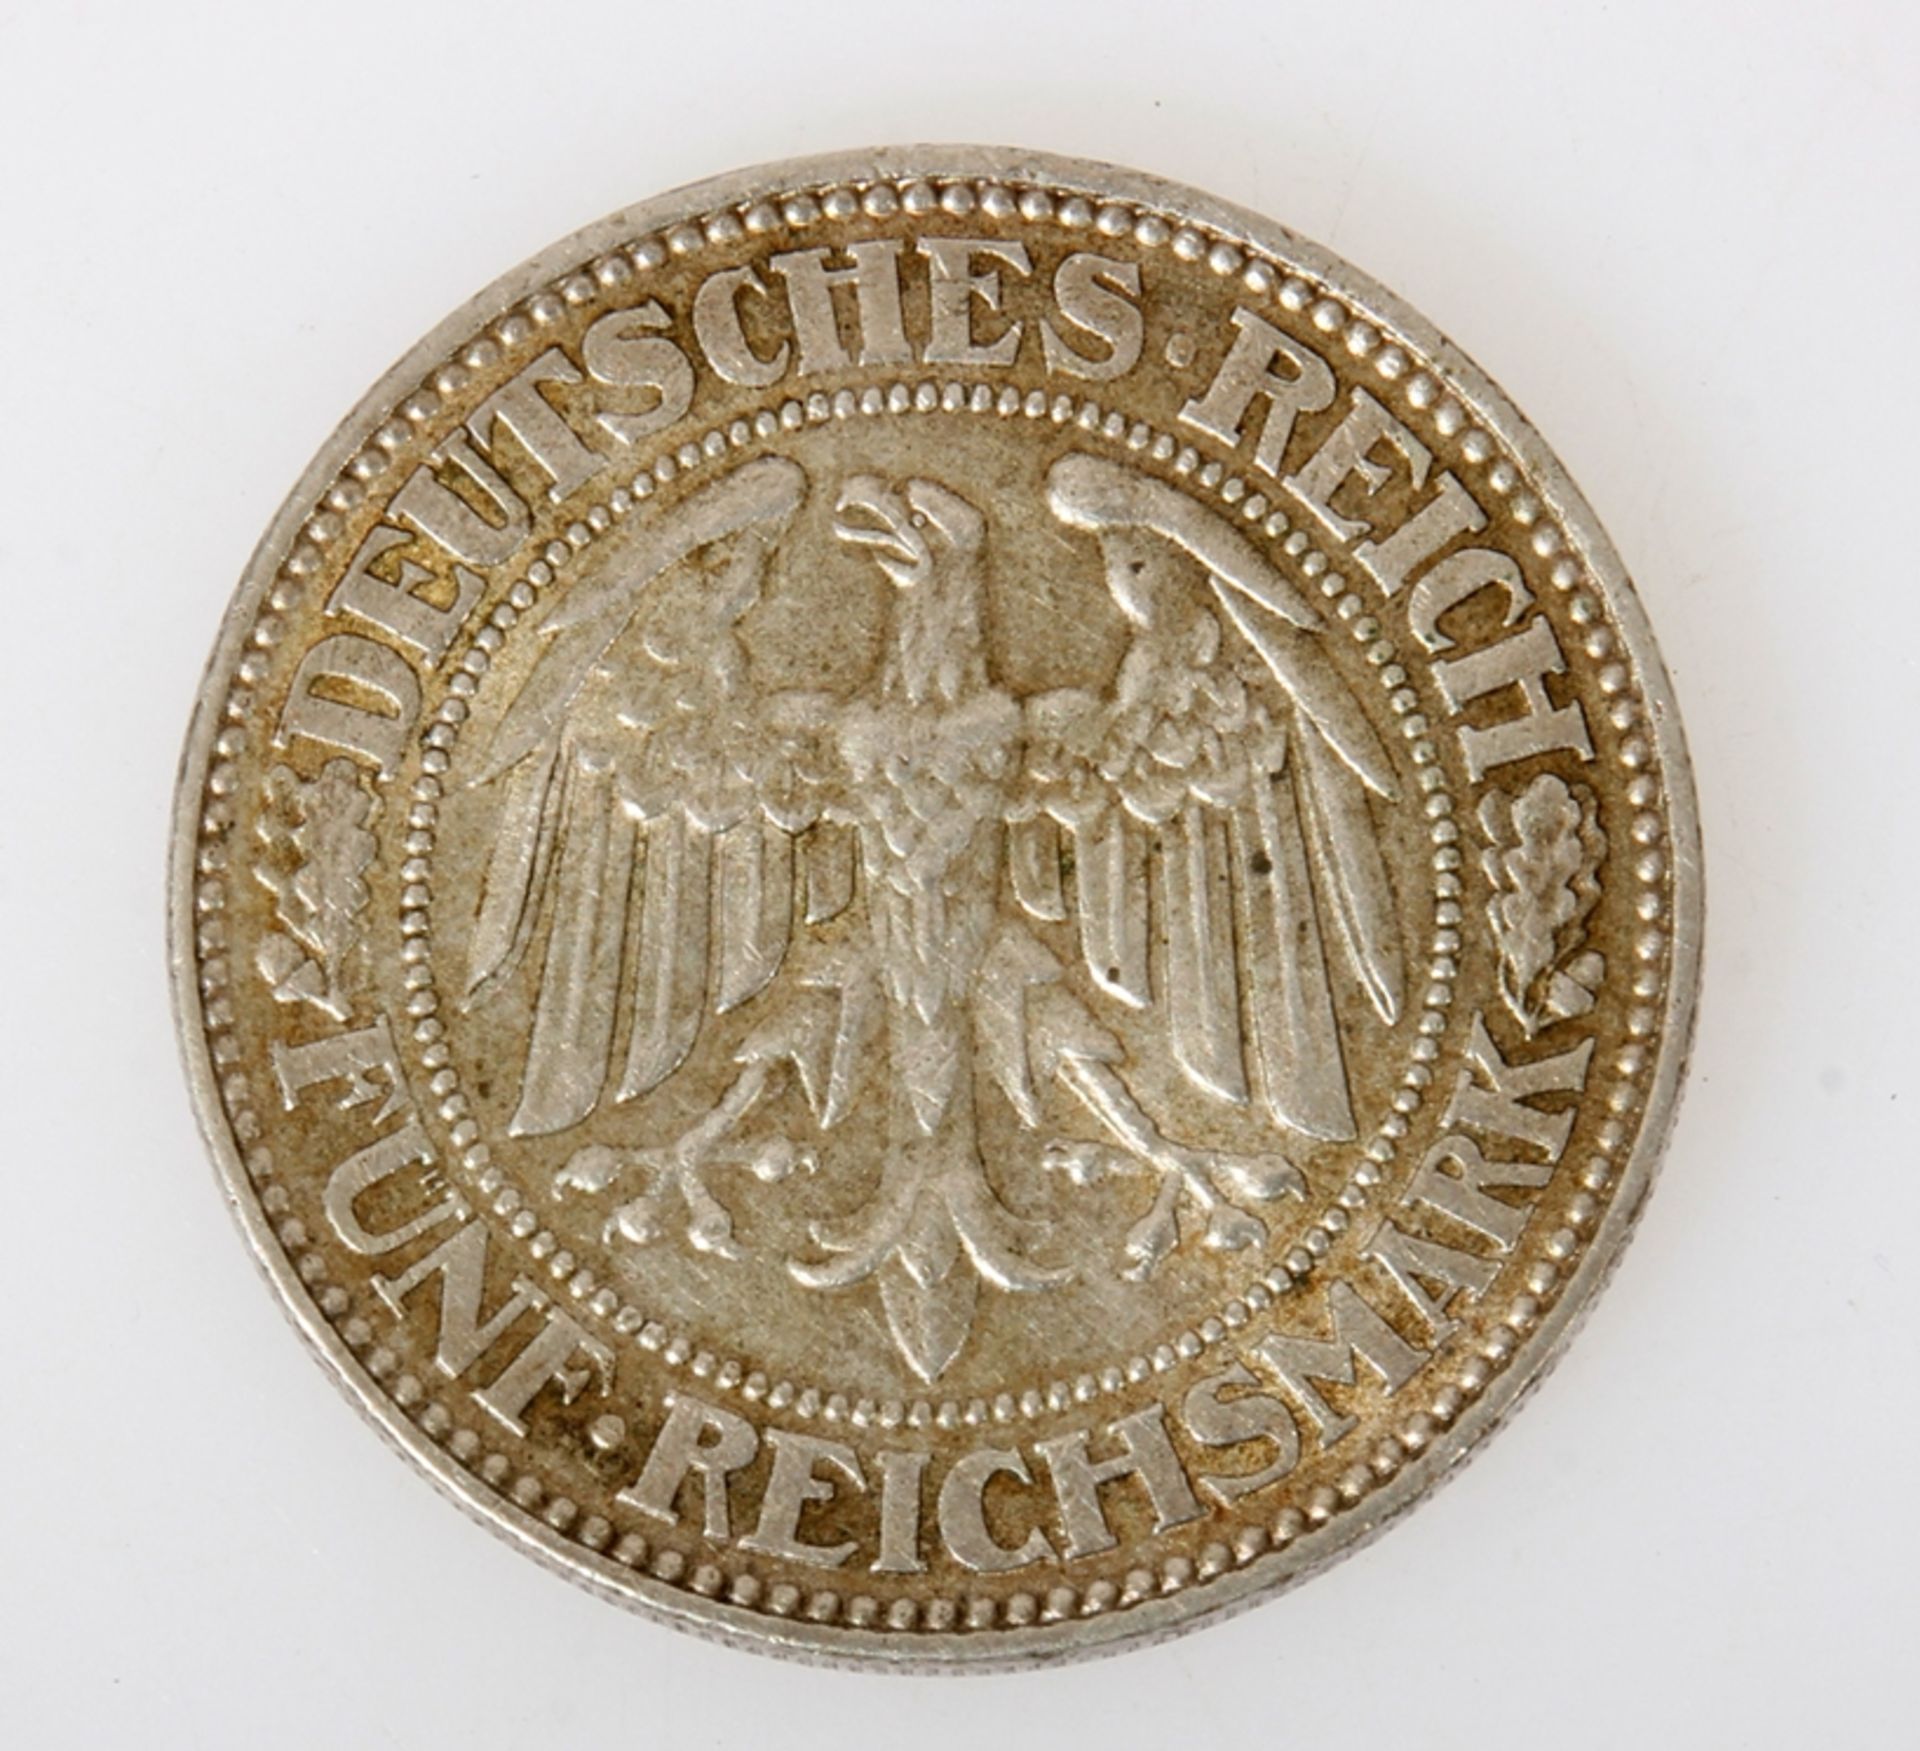 Weimarer Republik, Deutsches Reich, 5 Reichsmark, 1930 - Image 2 of 2